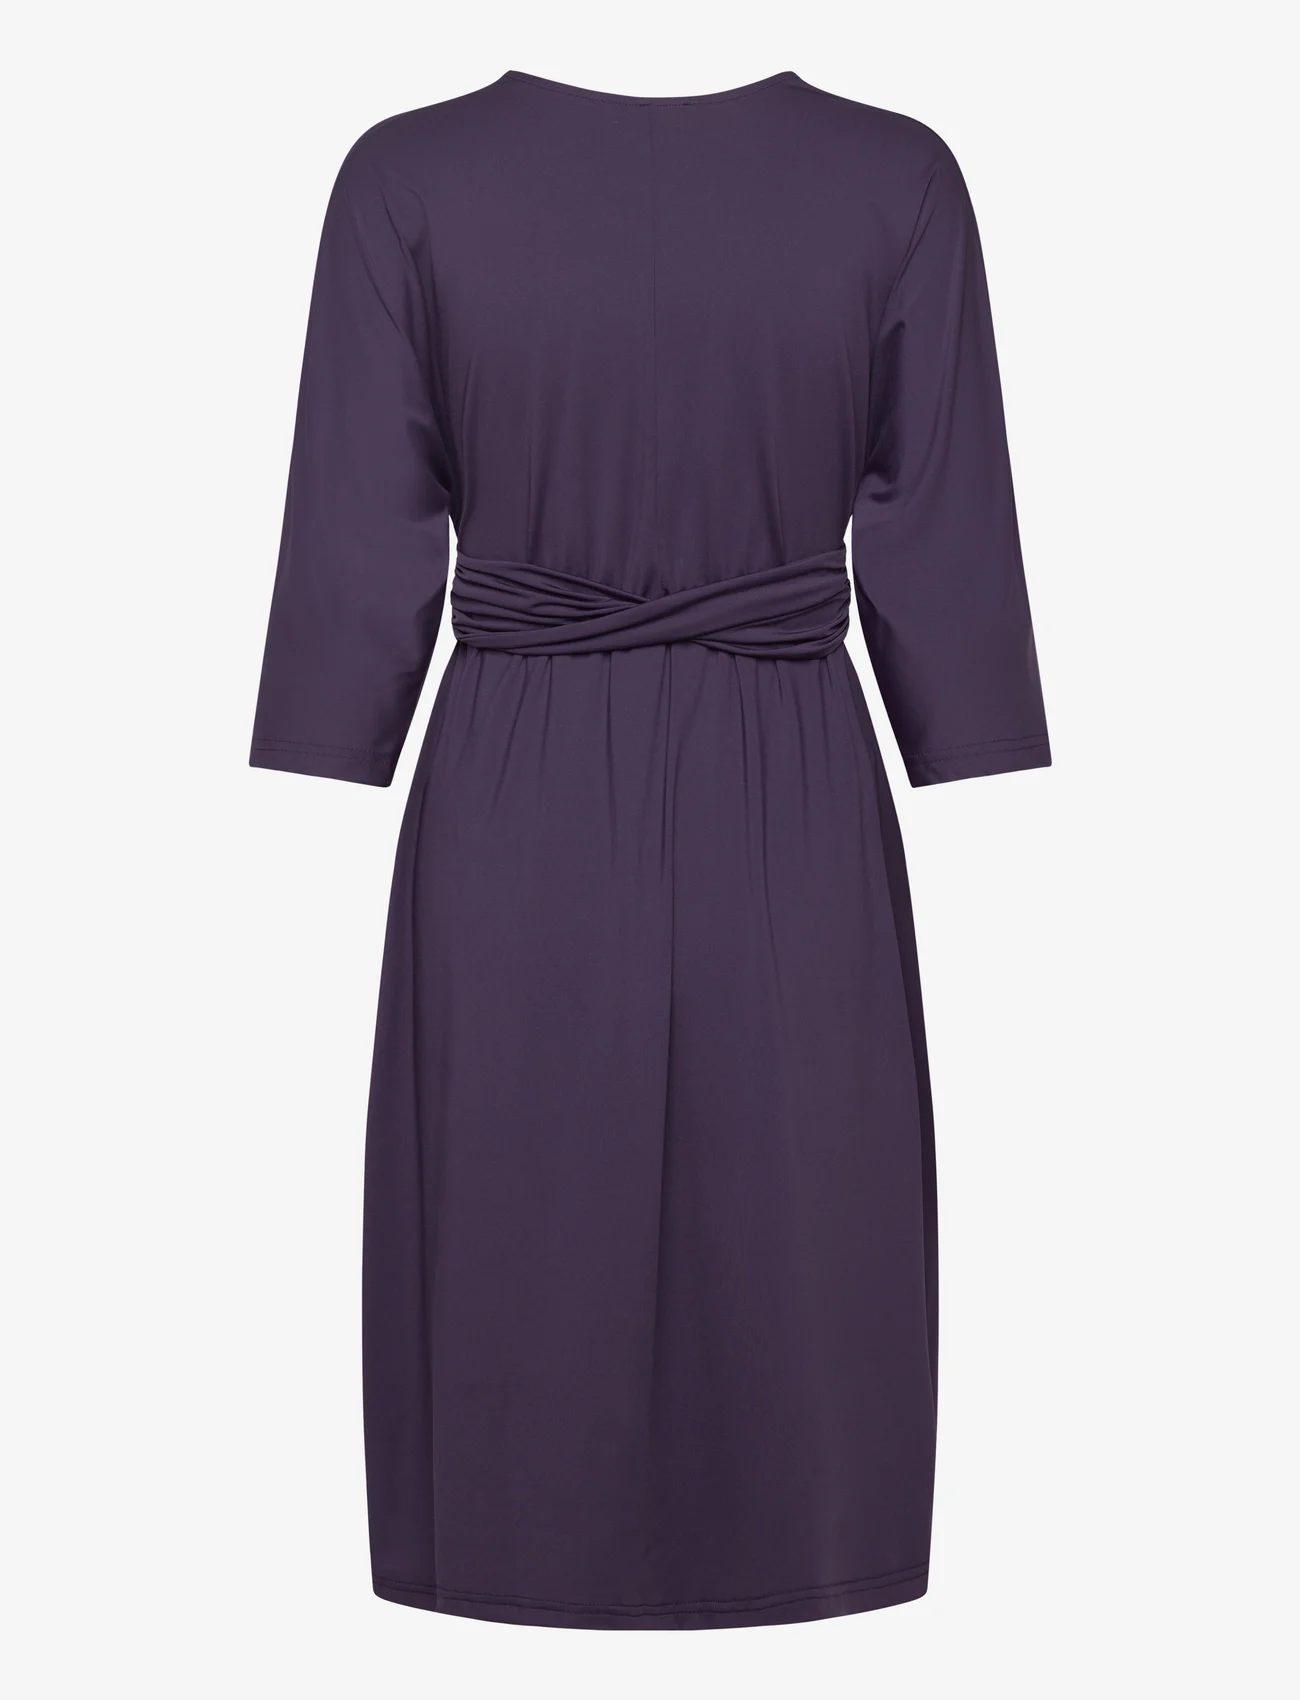 Rosemunde - Dress - midi-jurken - purple velvet - 1